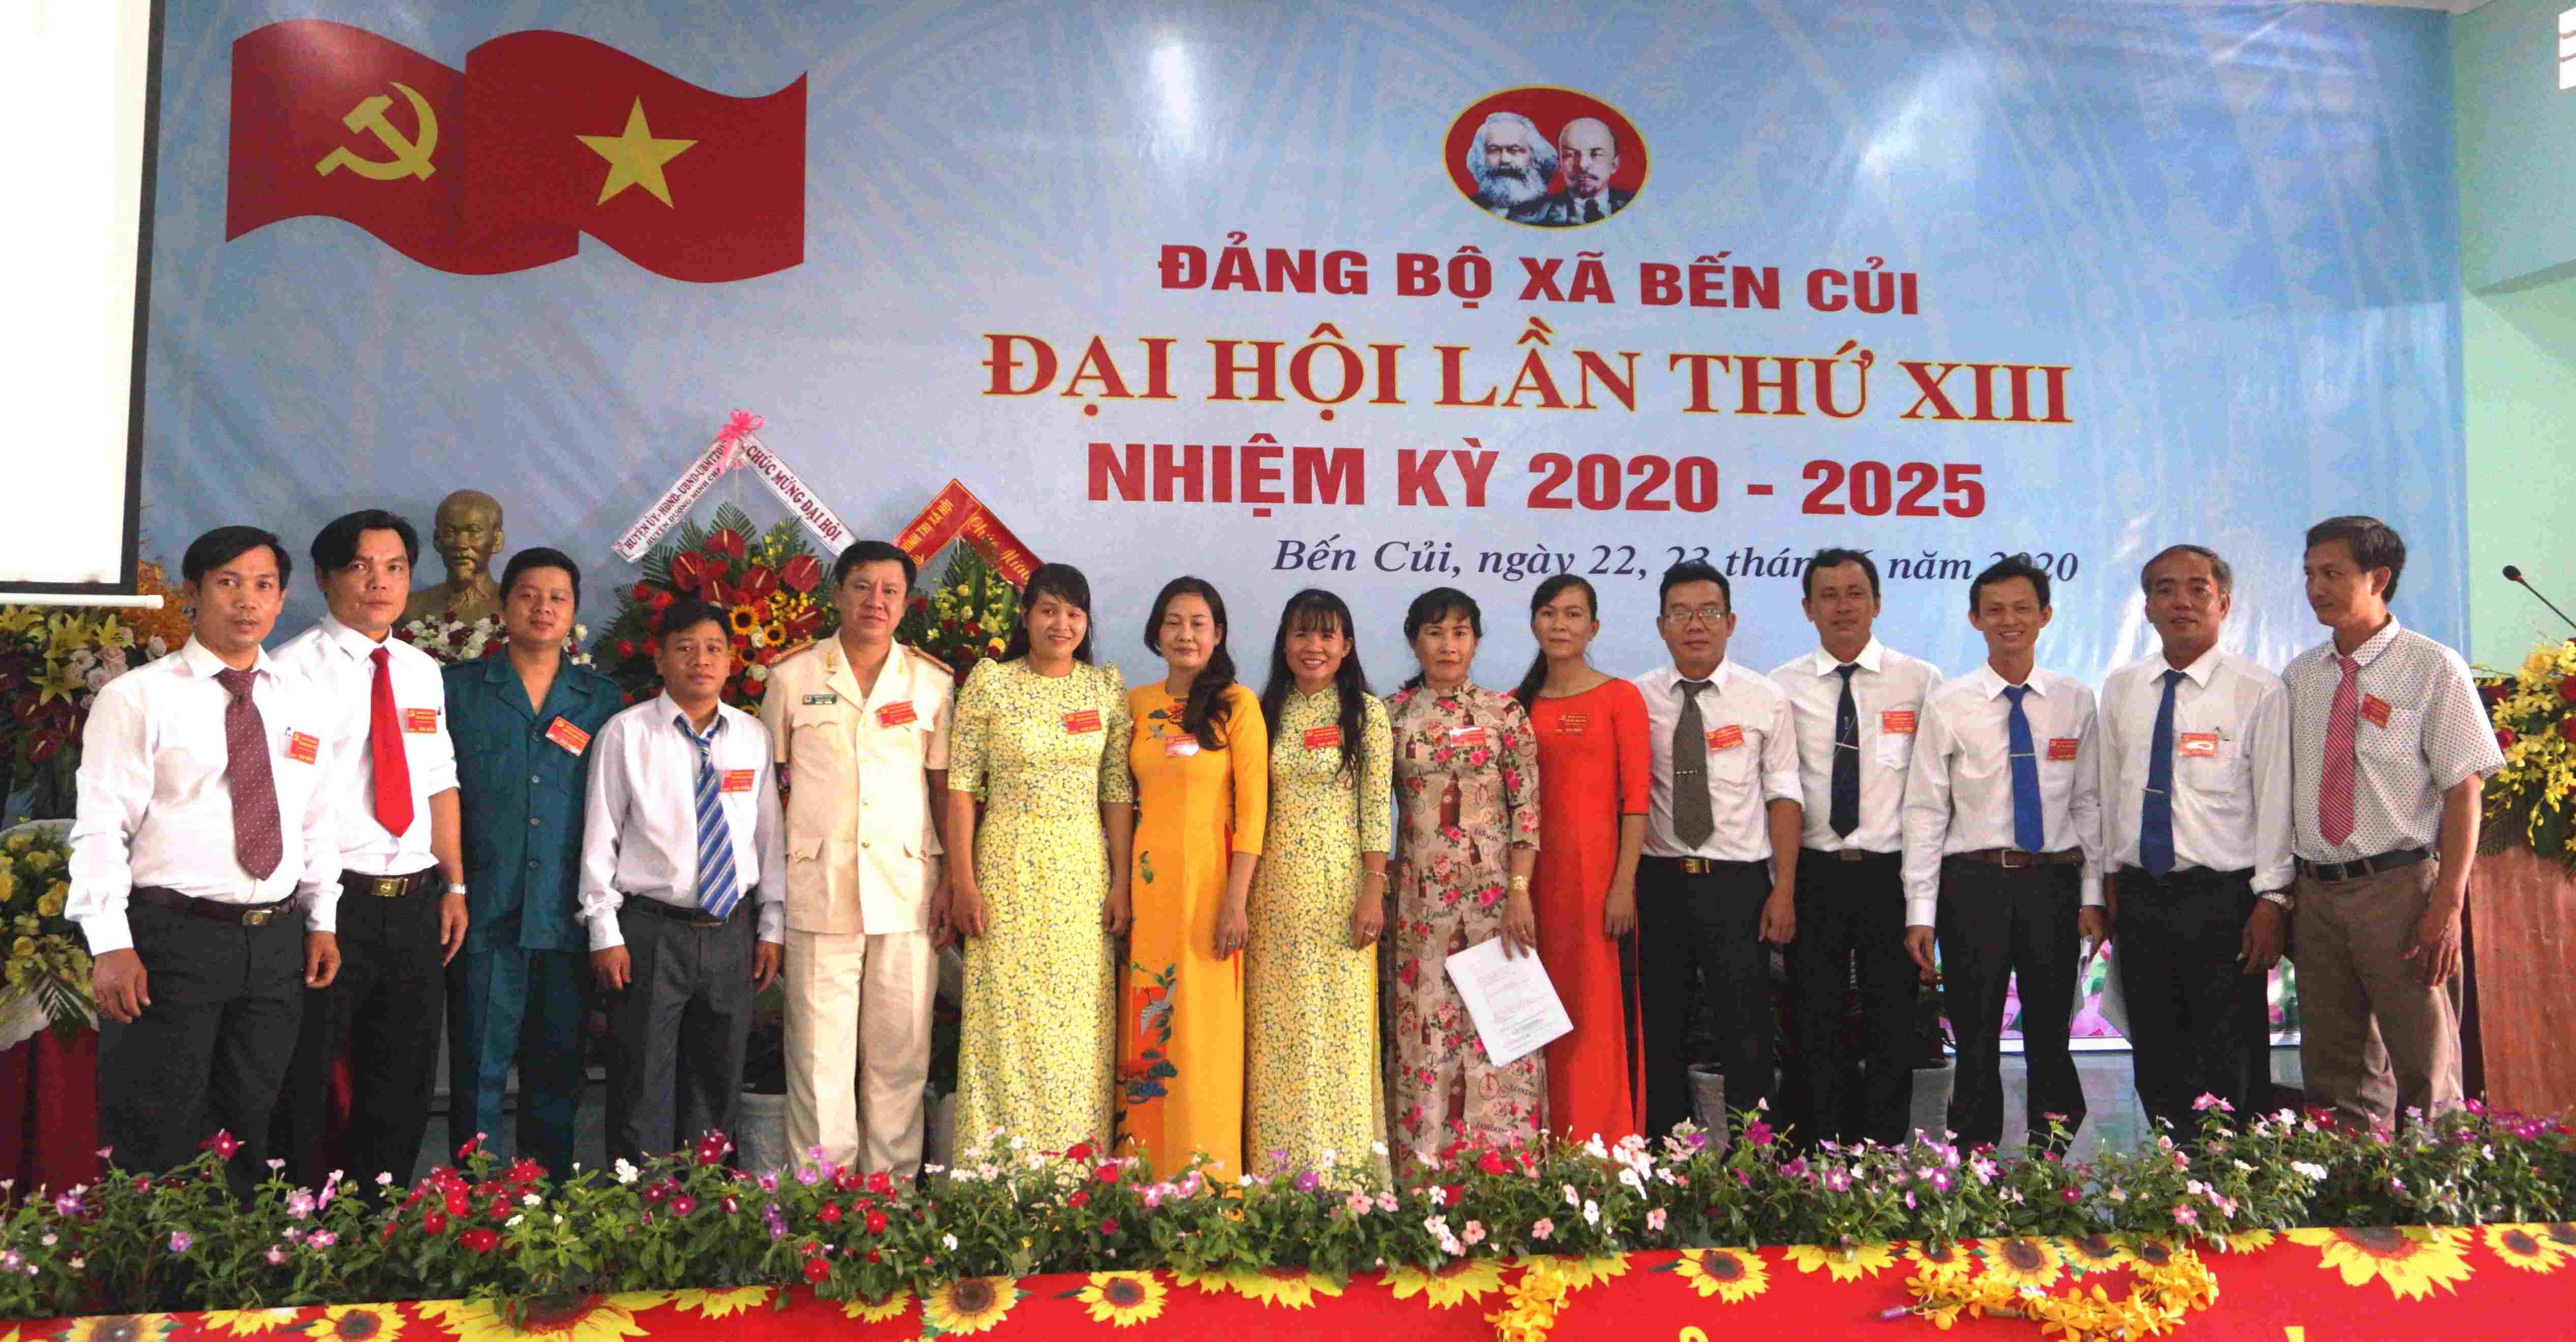 Xã Bến Củi tổ chức thành công Đại hội Đảng bộ lần thứ XIII, nhiệm kỳ 2020-2025